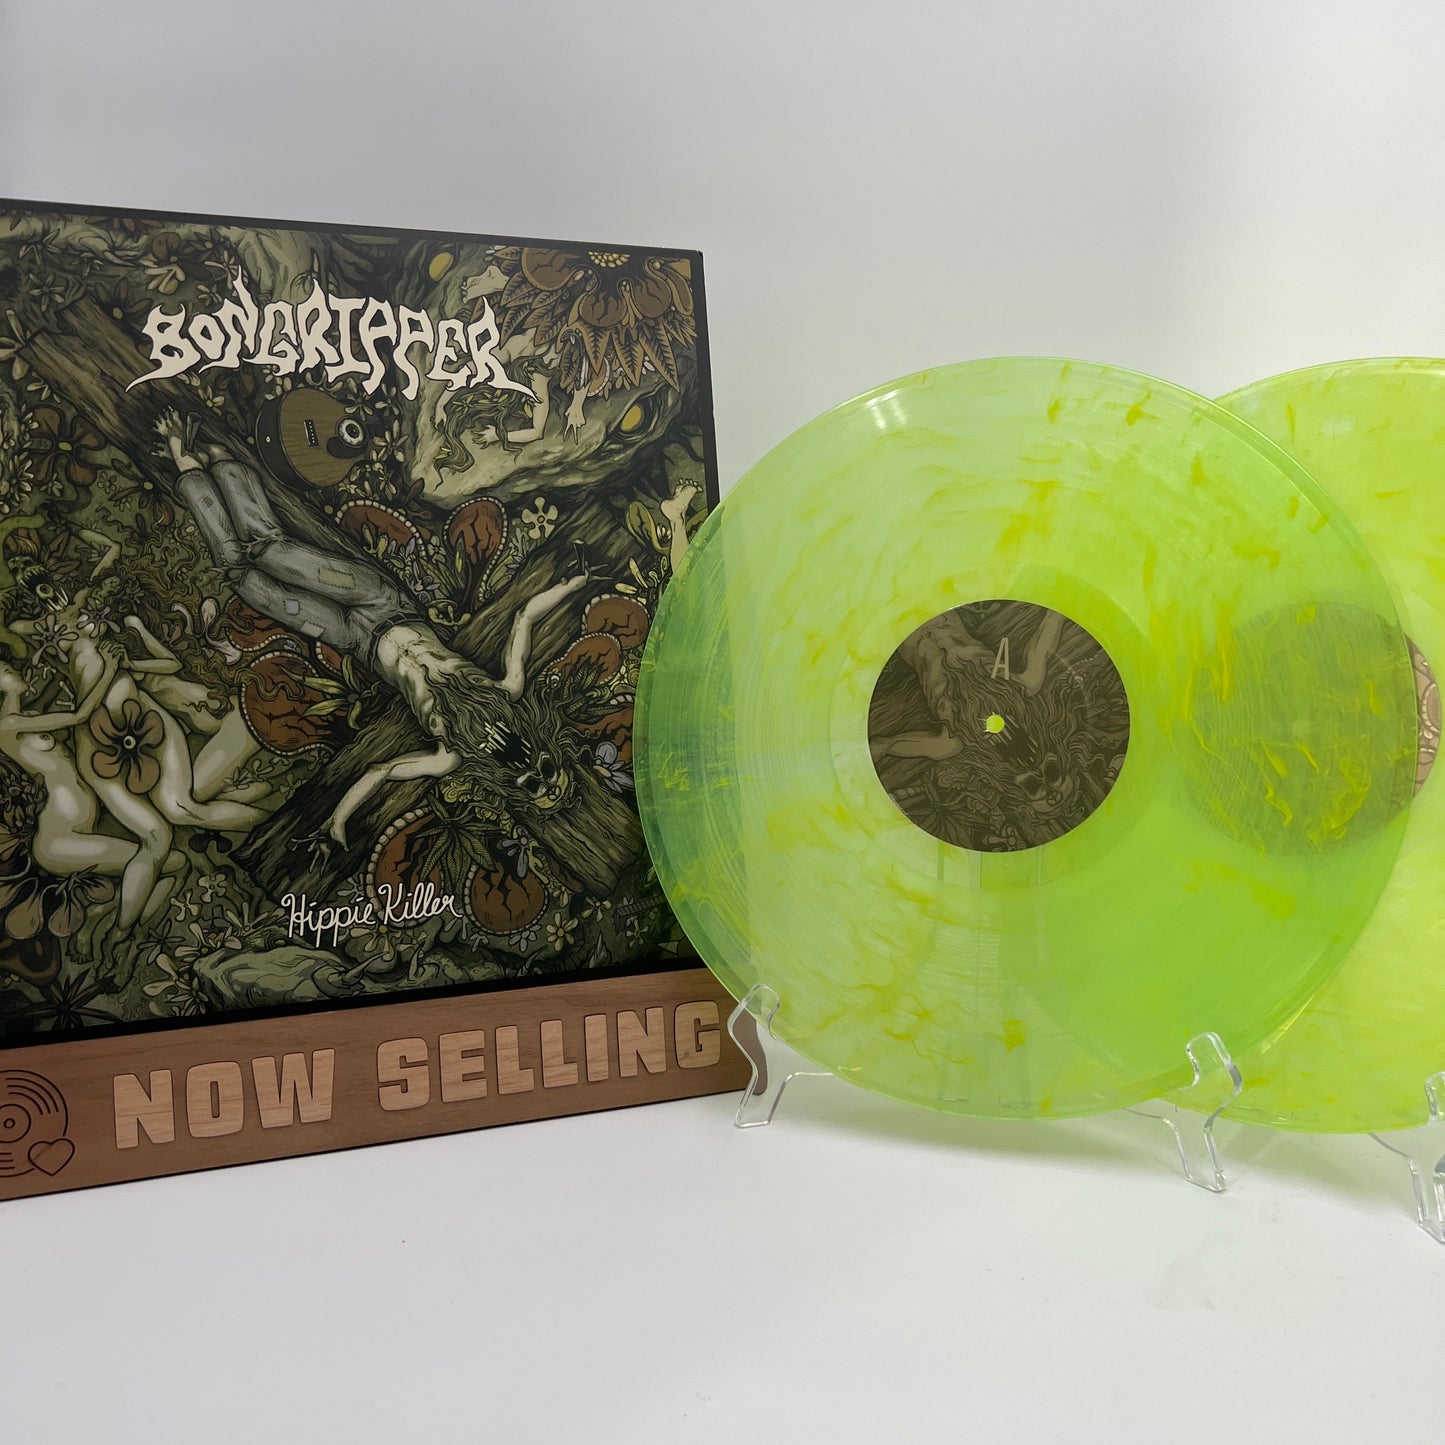 Bongripper ‎- Hippie Killer Vinyl LP Coke Clear With Yellow Swirl LTD 250